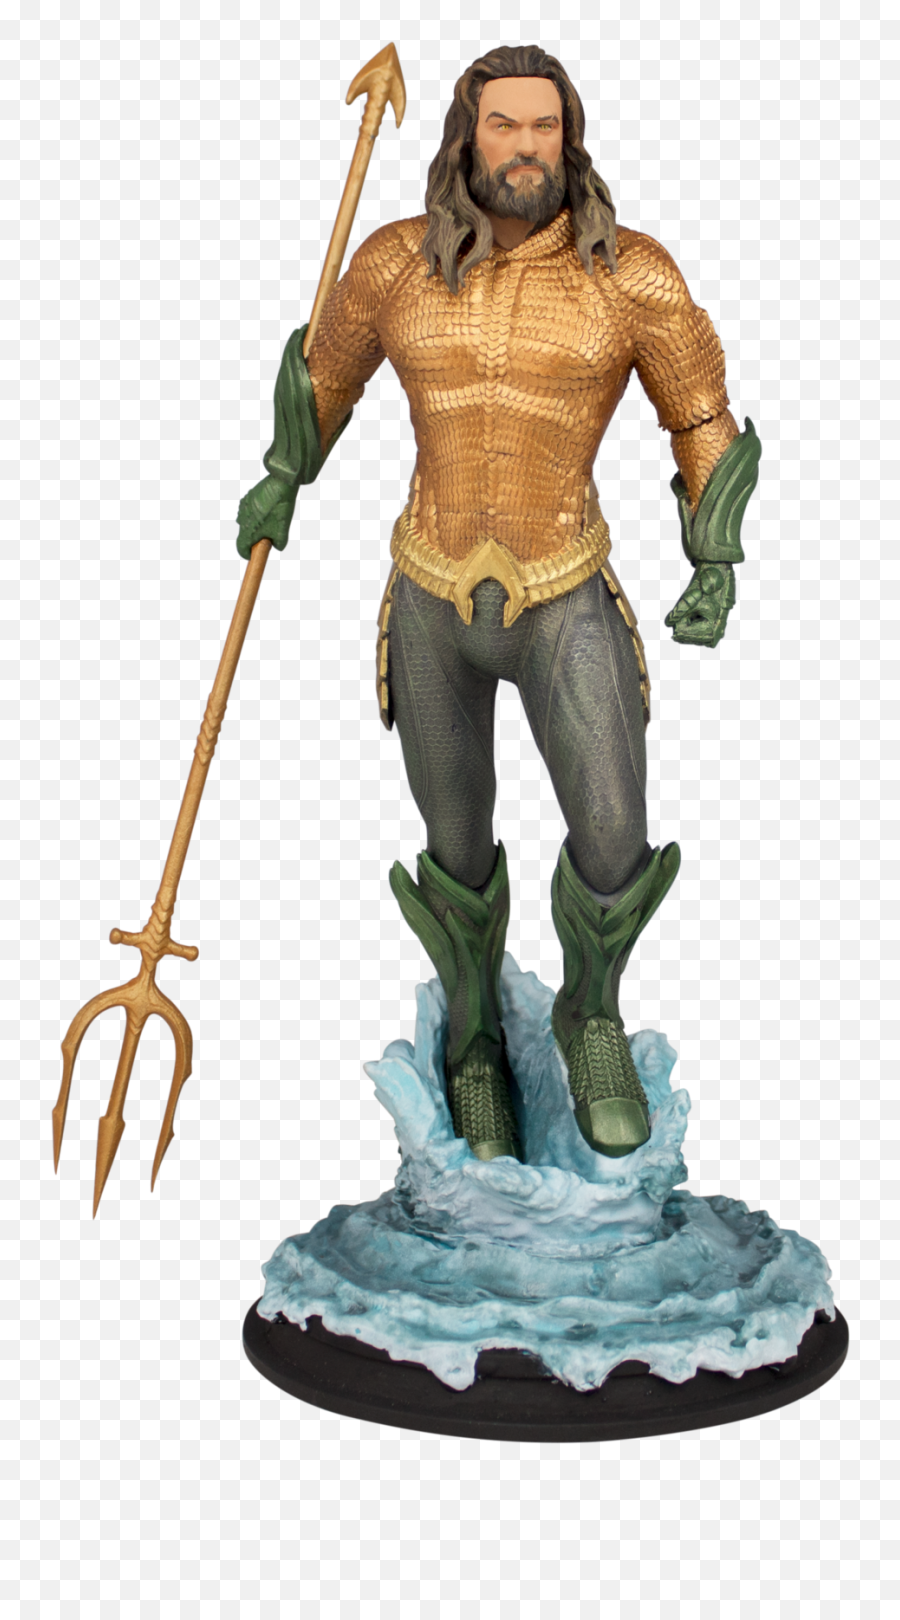 Download Hd Aquaman Statue - Aquaman Movie Statue Aquaman Statue Icon Heroes Png,Aquaman Logo Png